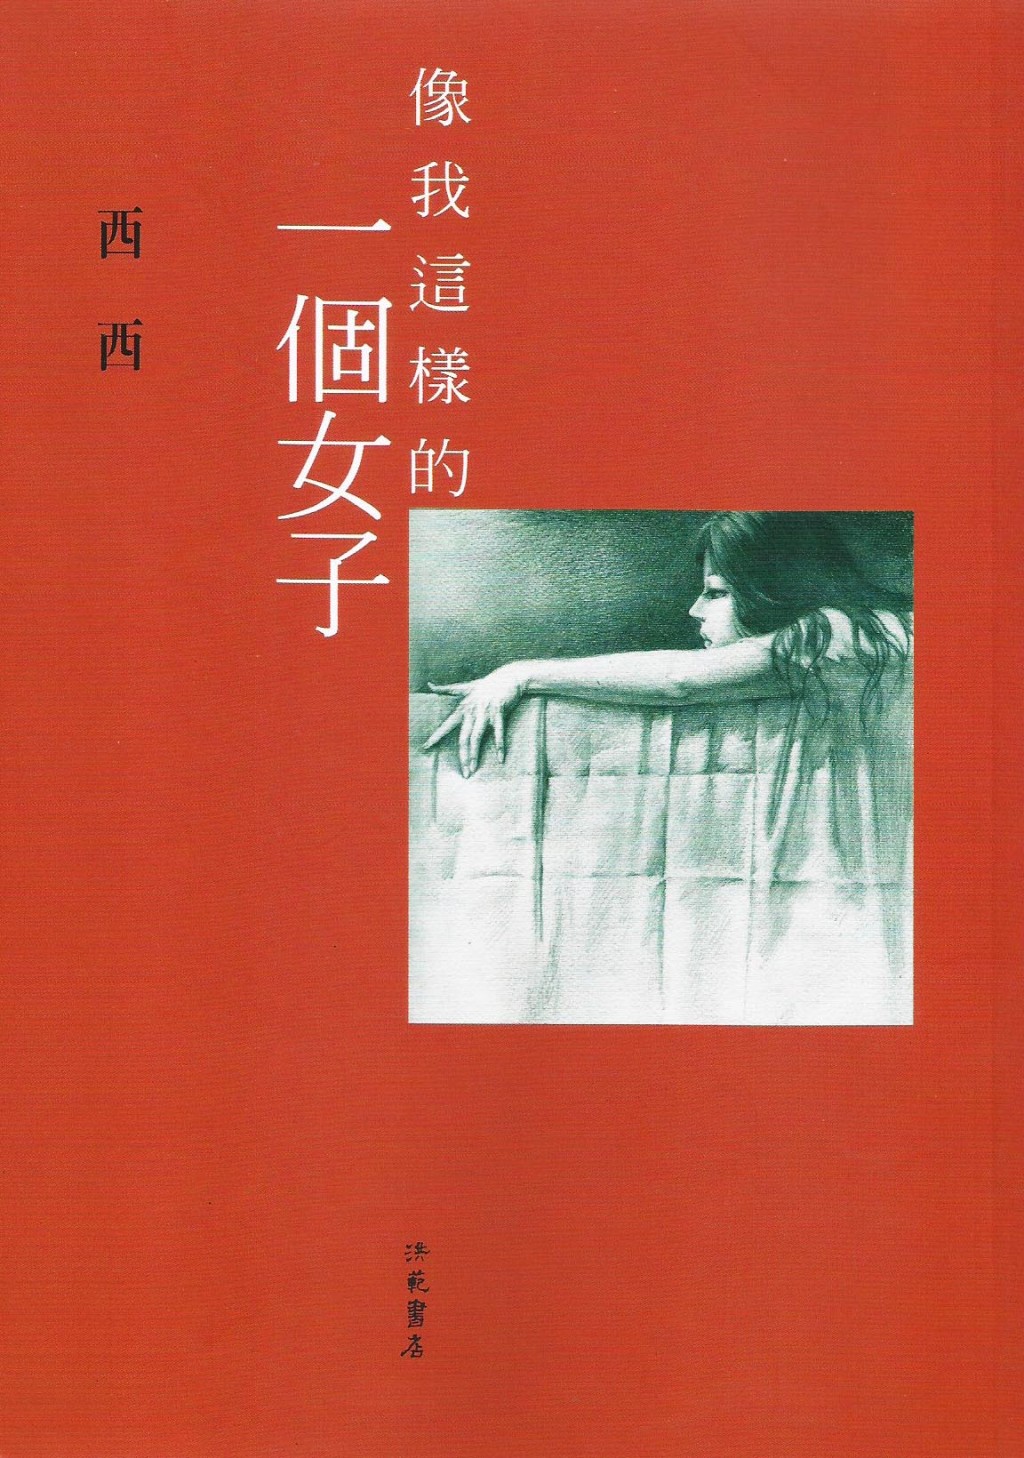 《像我这样的一个女子》为西西著名短篇小说，刻画从事殡仪化妆的女主角故事，是香港文学创作上的经典作品。